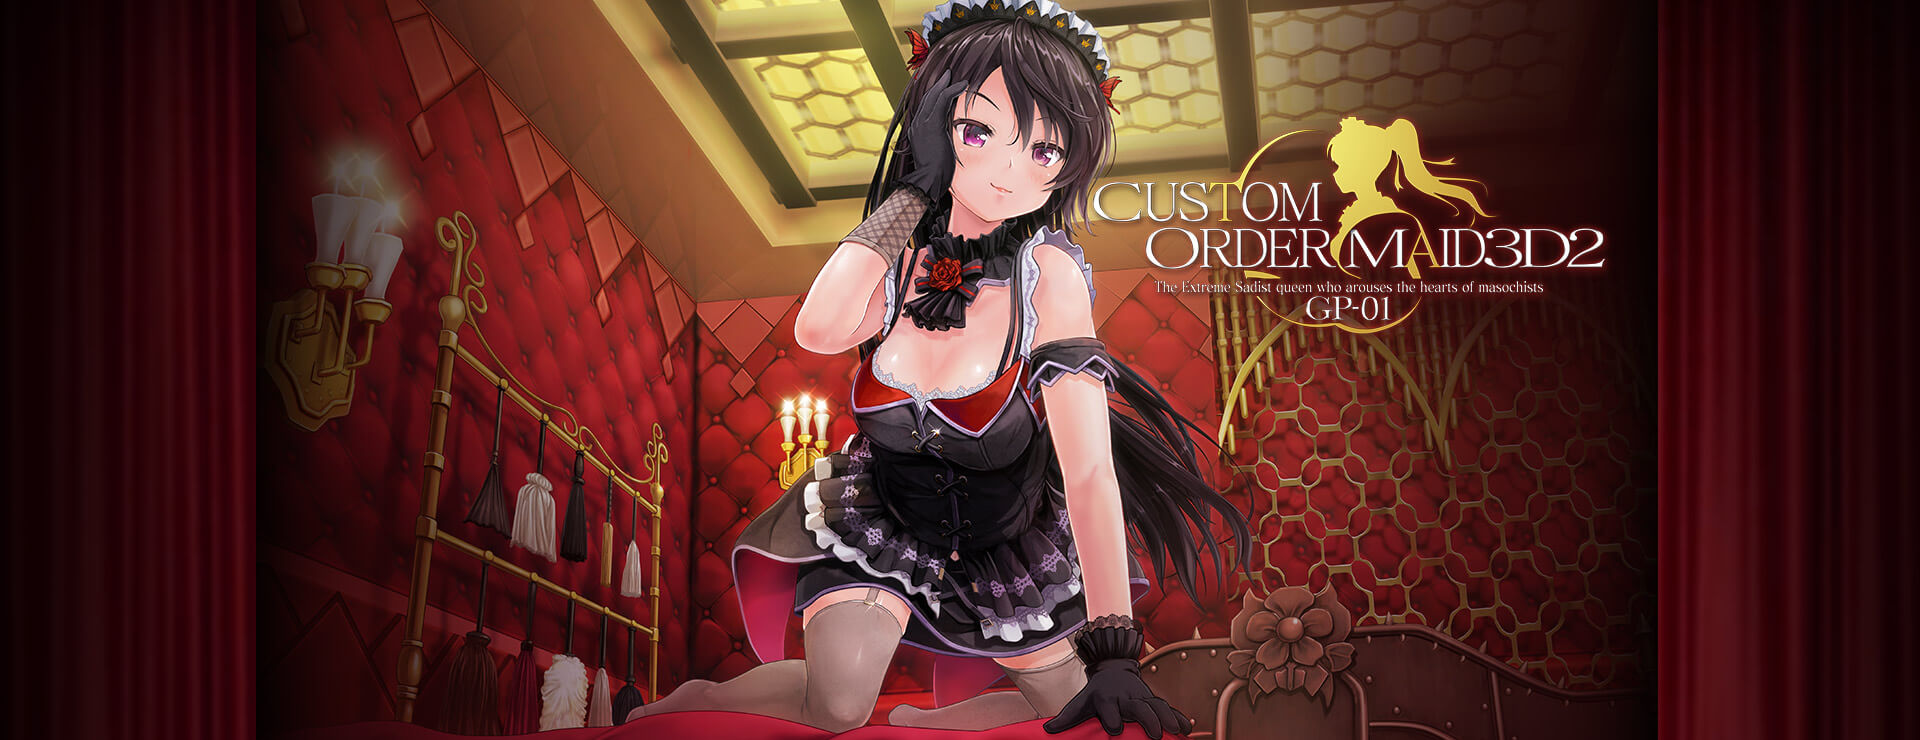 Custom Order Maid 3D2: Extreme Sadist Queen GP01 DLC - Simulación Juego